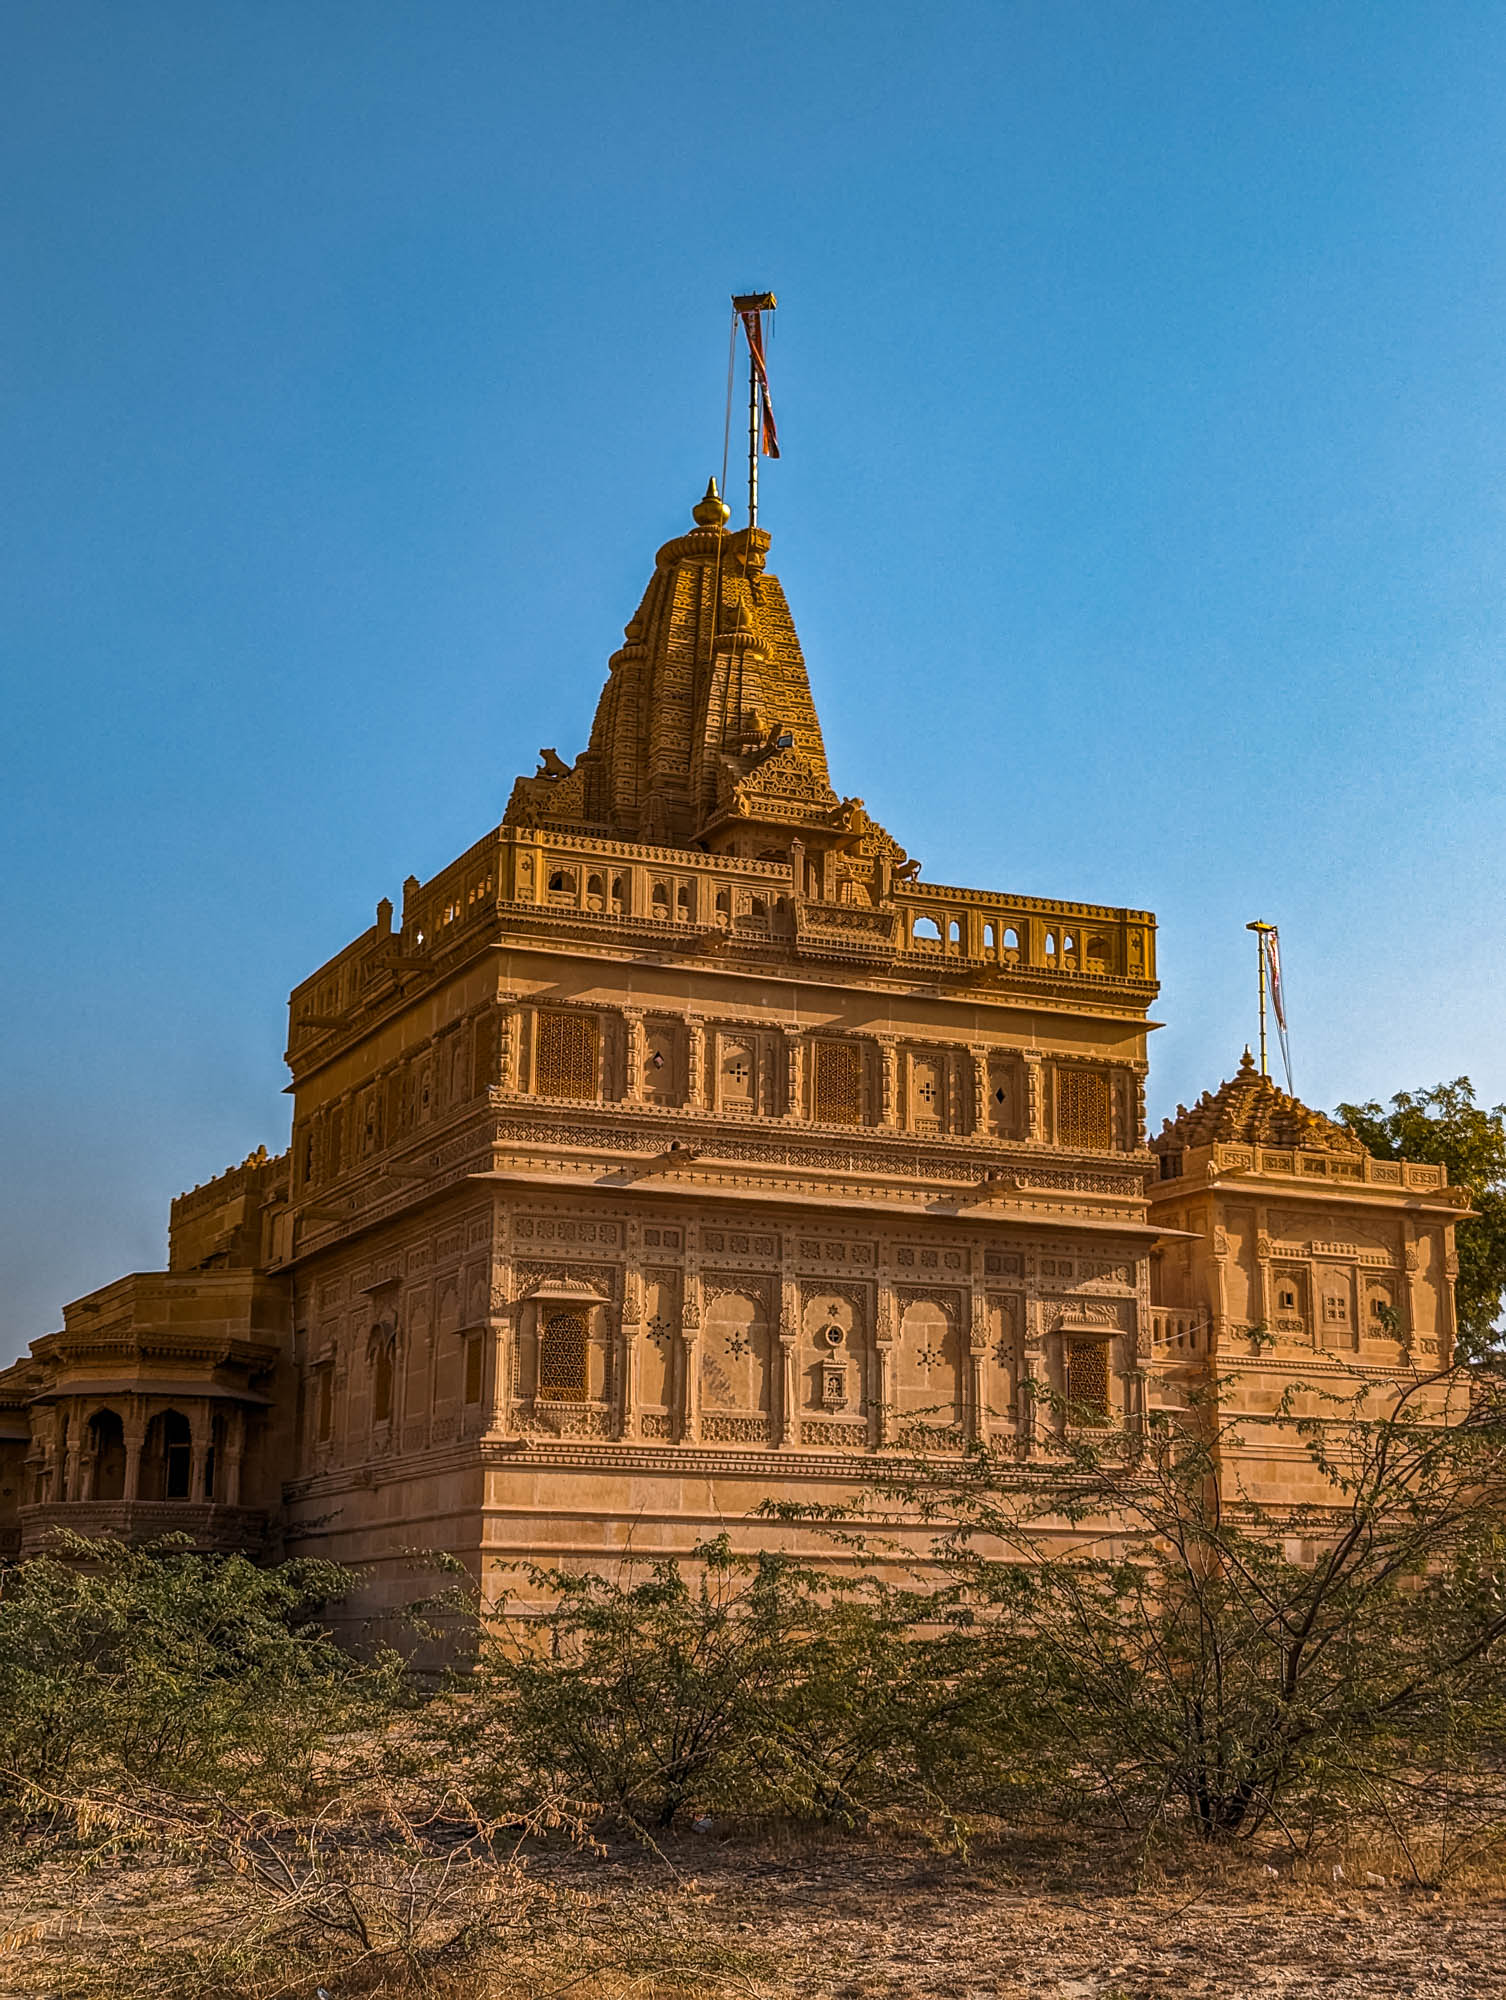 amar sagar, jaisalmer, maharawal akhai singh, lake, palace, rajasthan, stone figurines, slanted steps, stone steps, heritage site